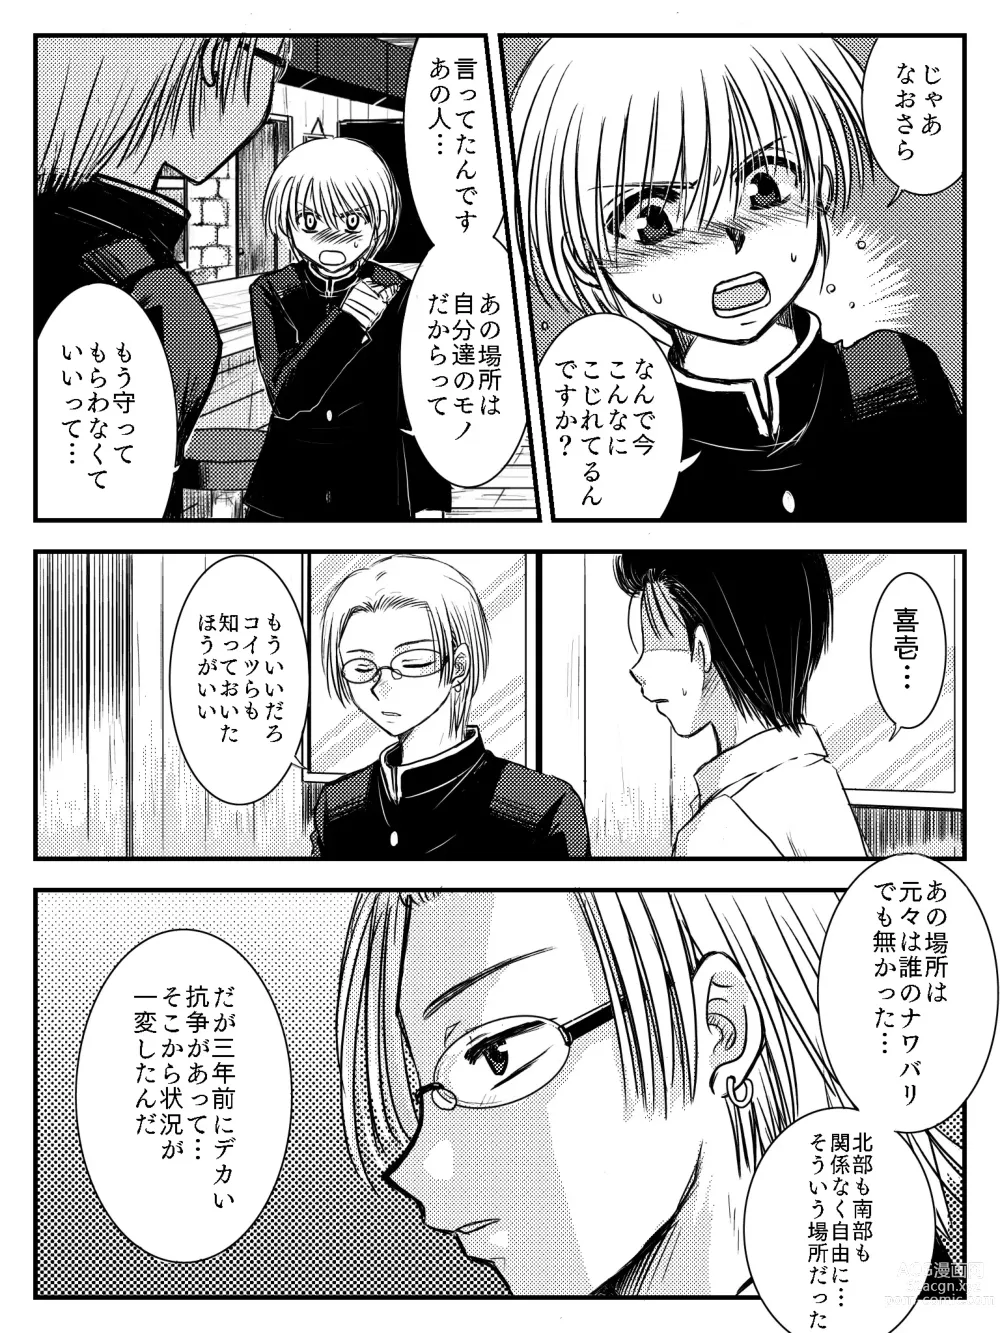 Page 15 of doujinshi LADIES NAVIGATION Episode 4